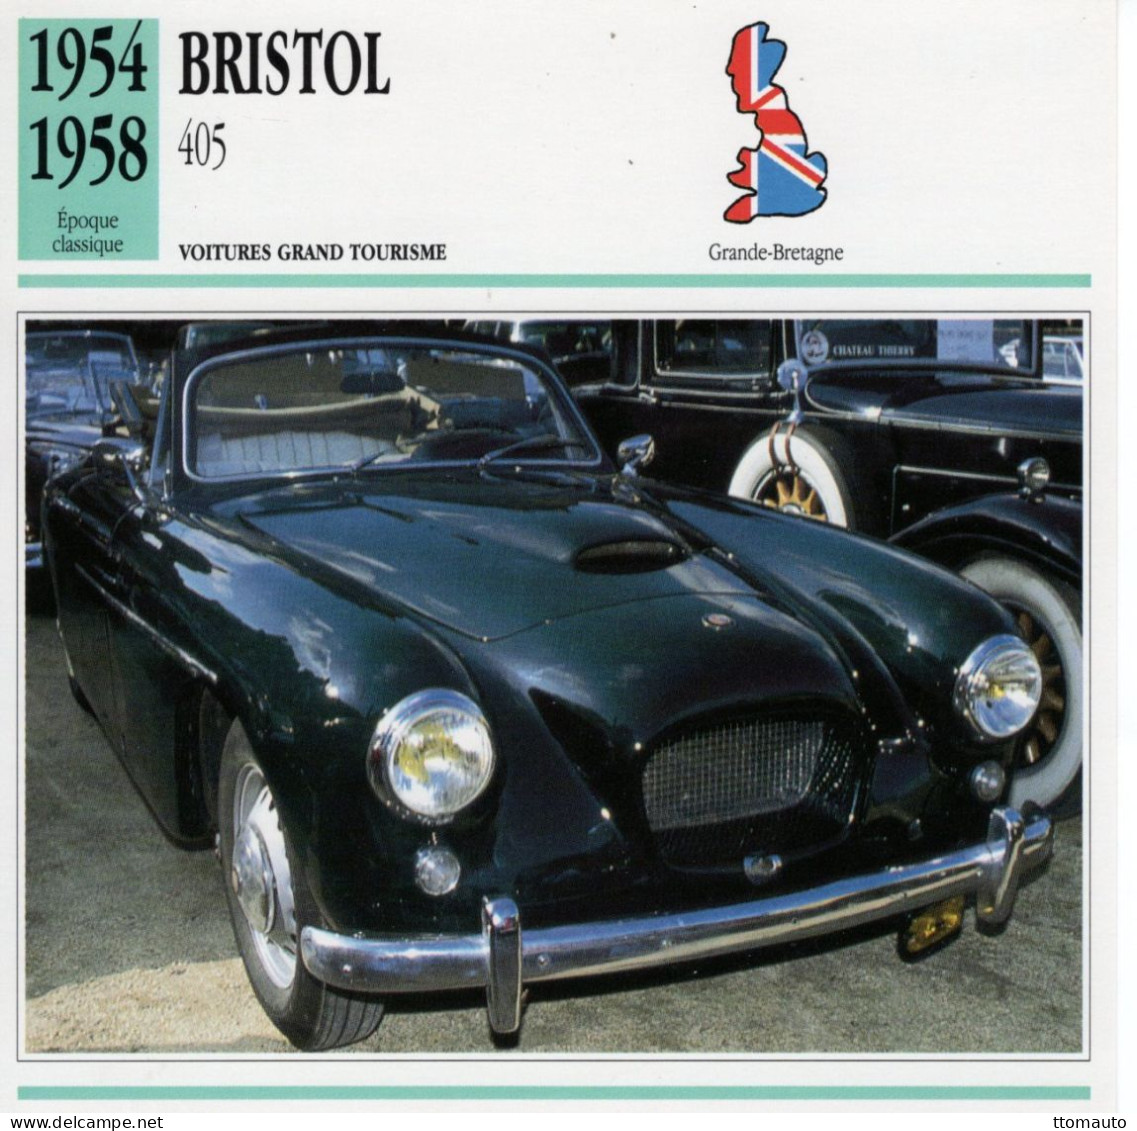 Bristol 405  -  1956  - Voiture Grand Tourisme -  Fiche Technique Automobile (GB) - Auto's